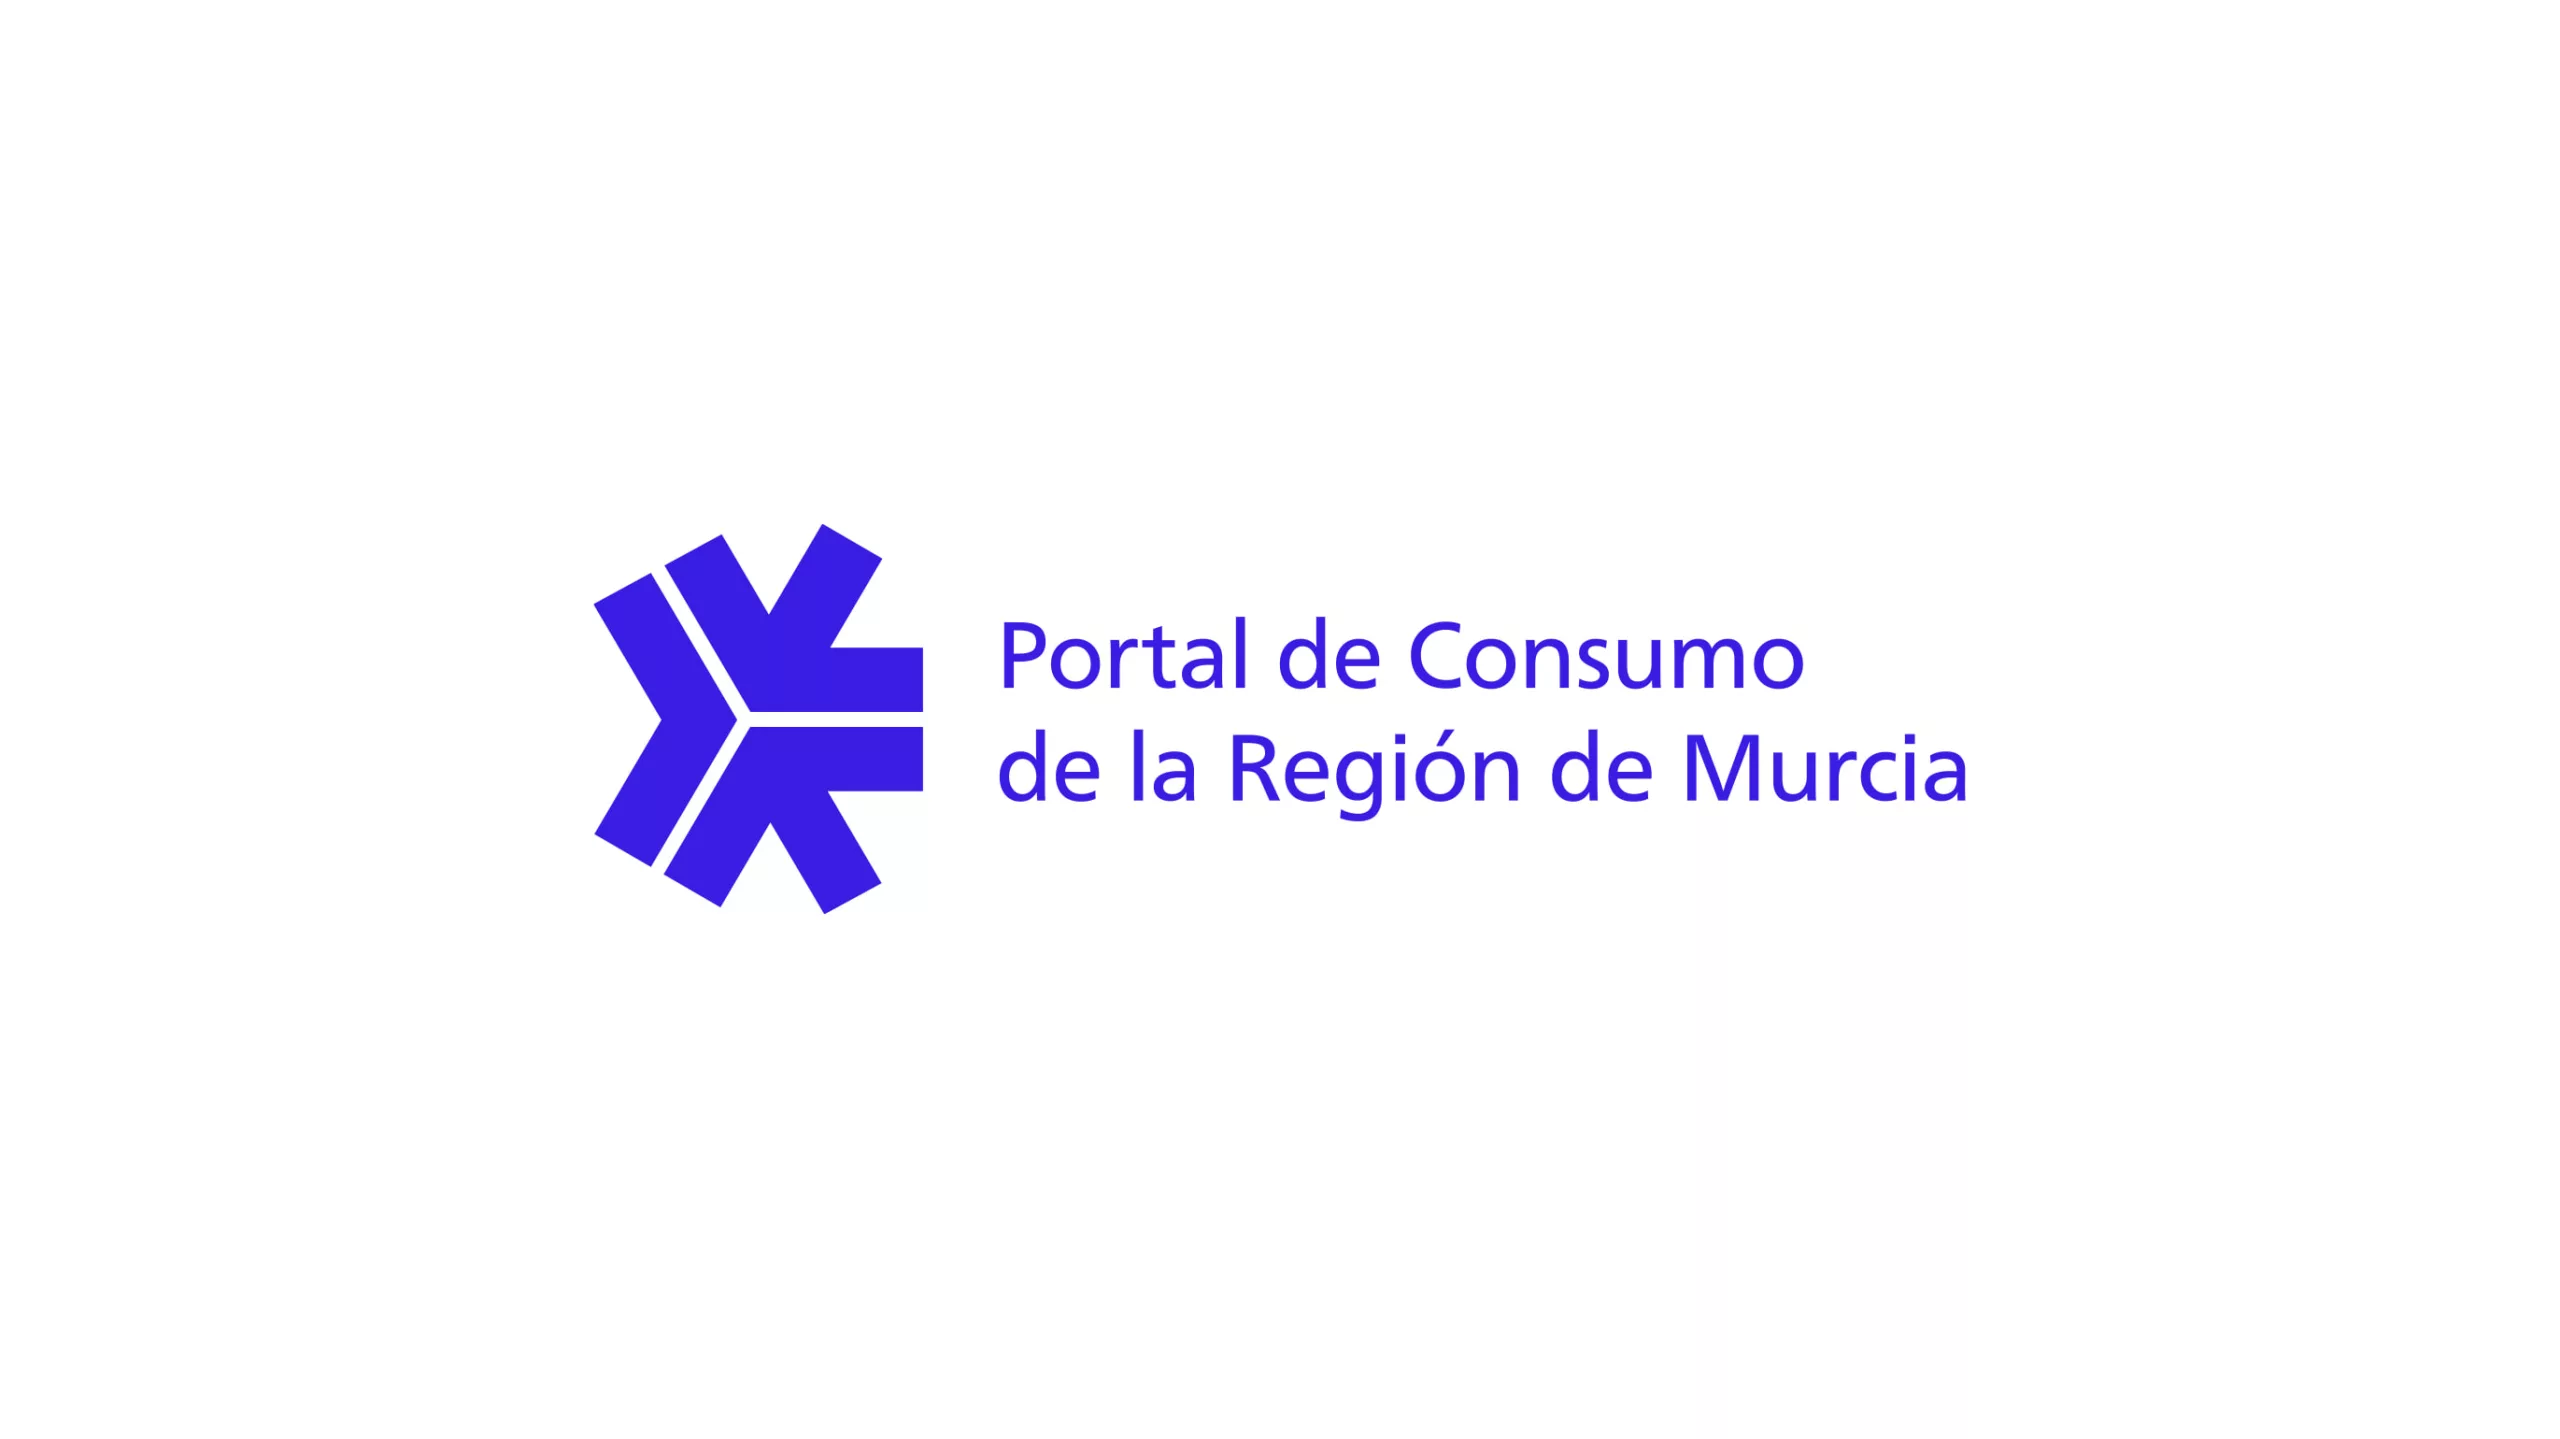 Logotipo del Portal de Consumo de la Región de Murcia con el fondo blanco